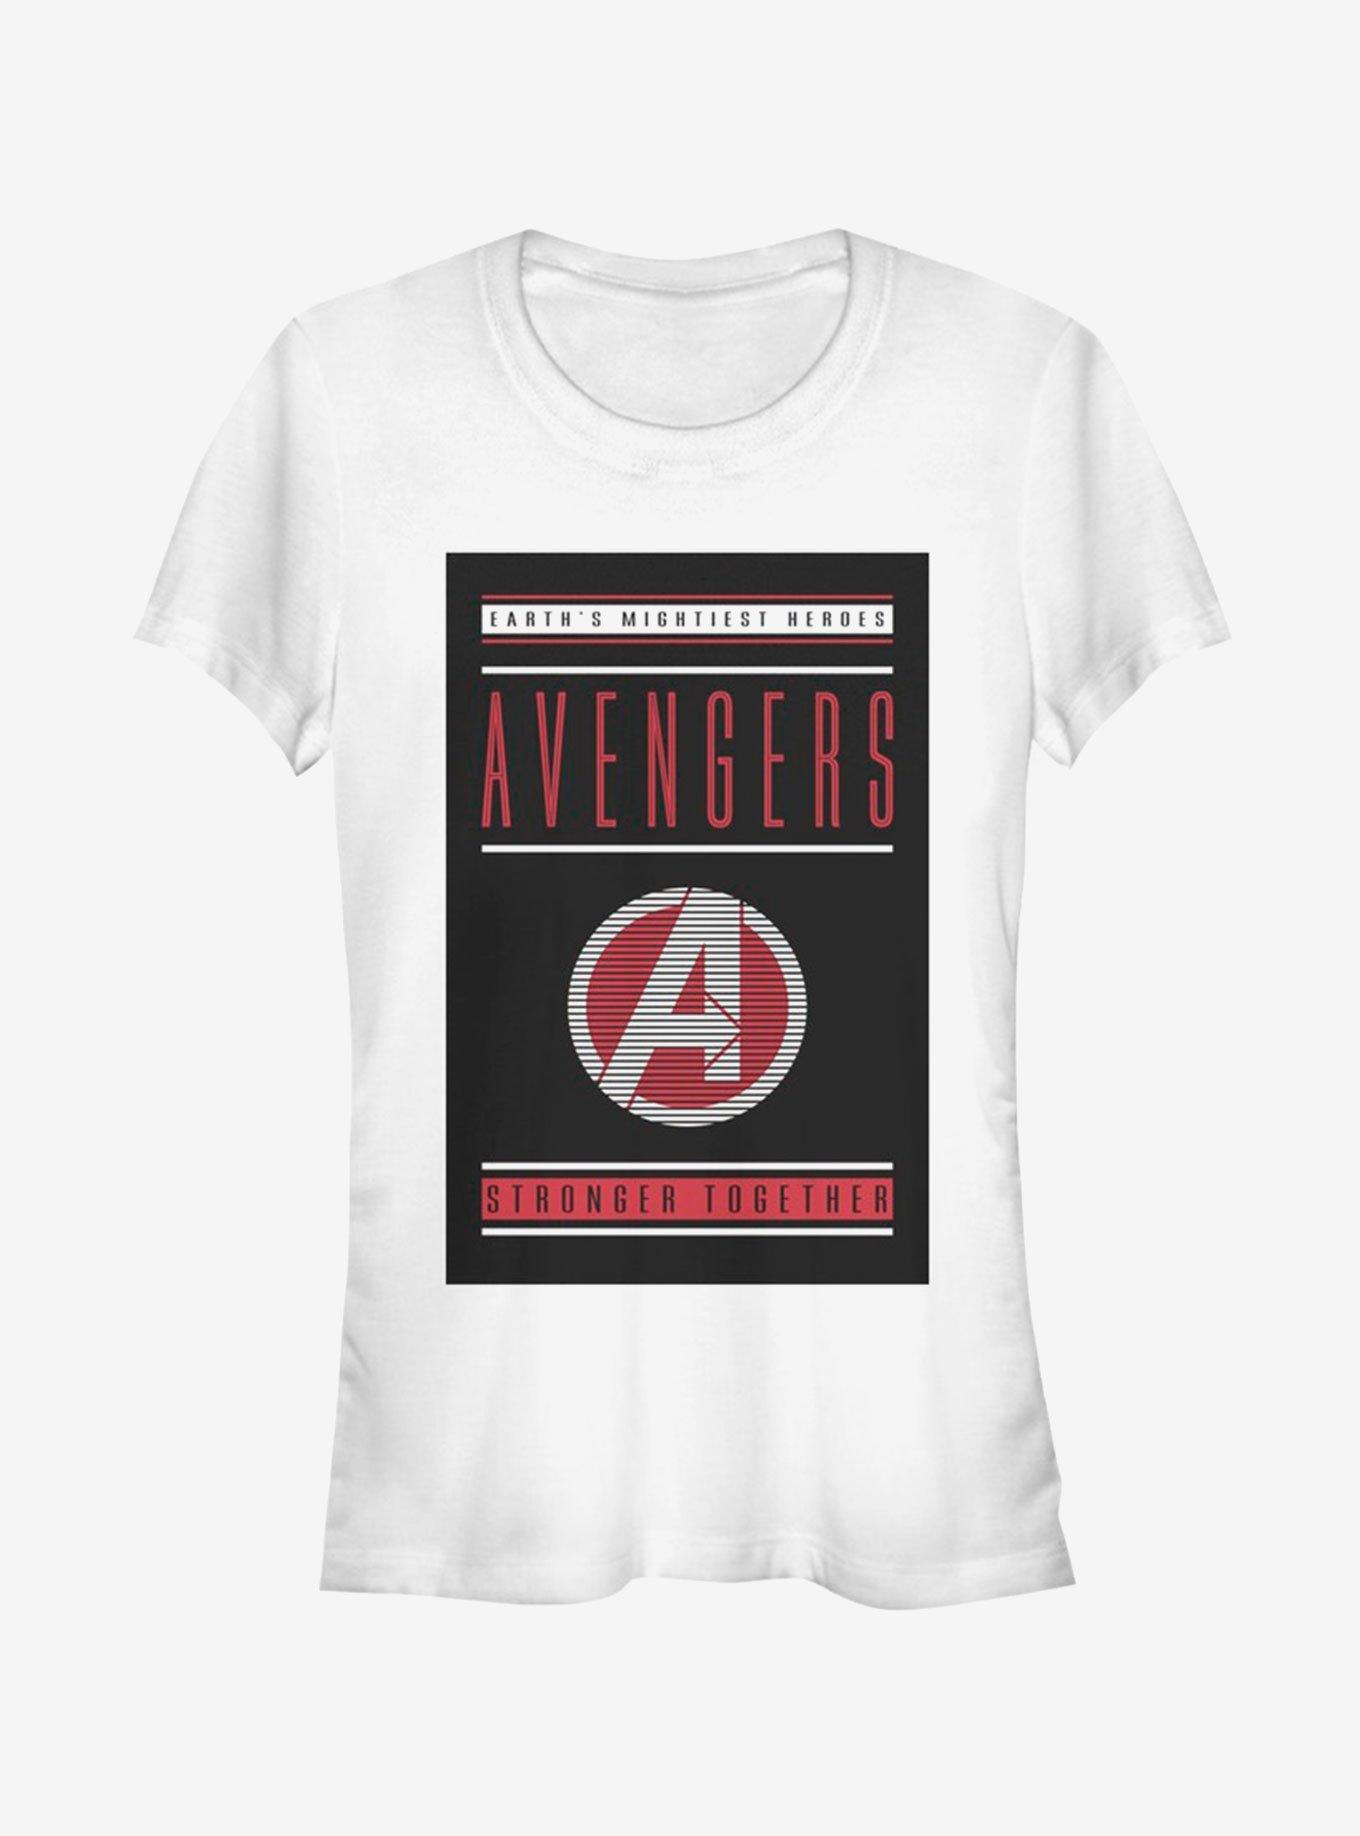 Marvel Avengers: Endgame Stronger Together Girls T-Shirt